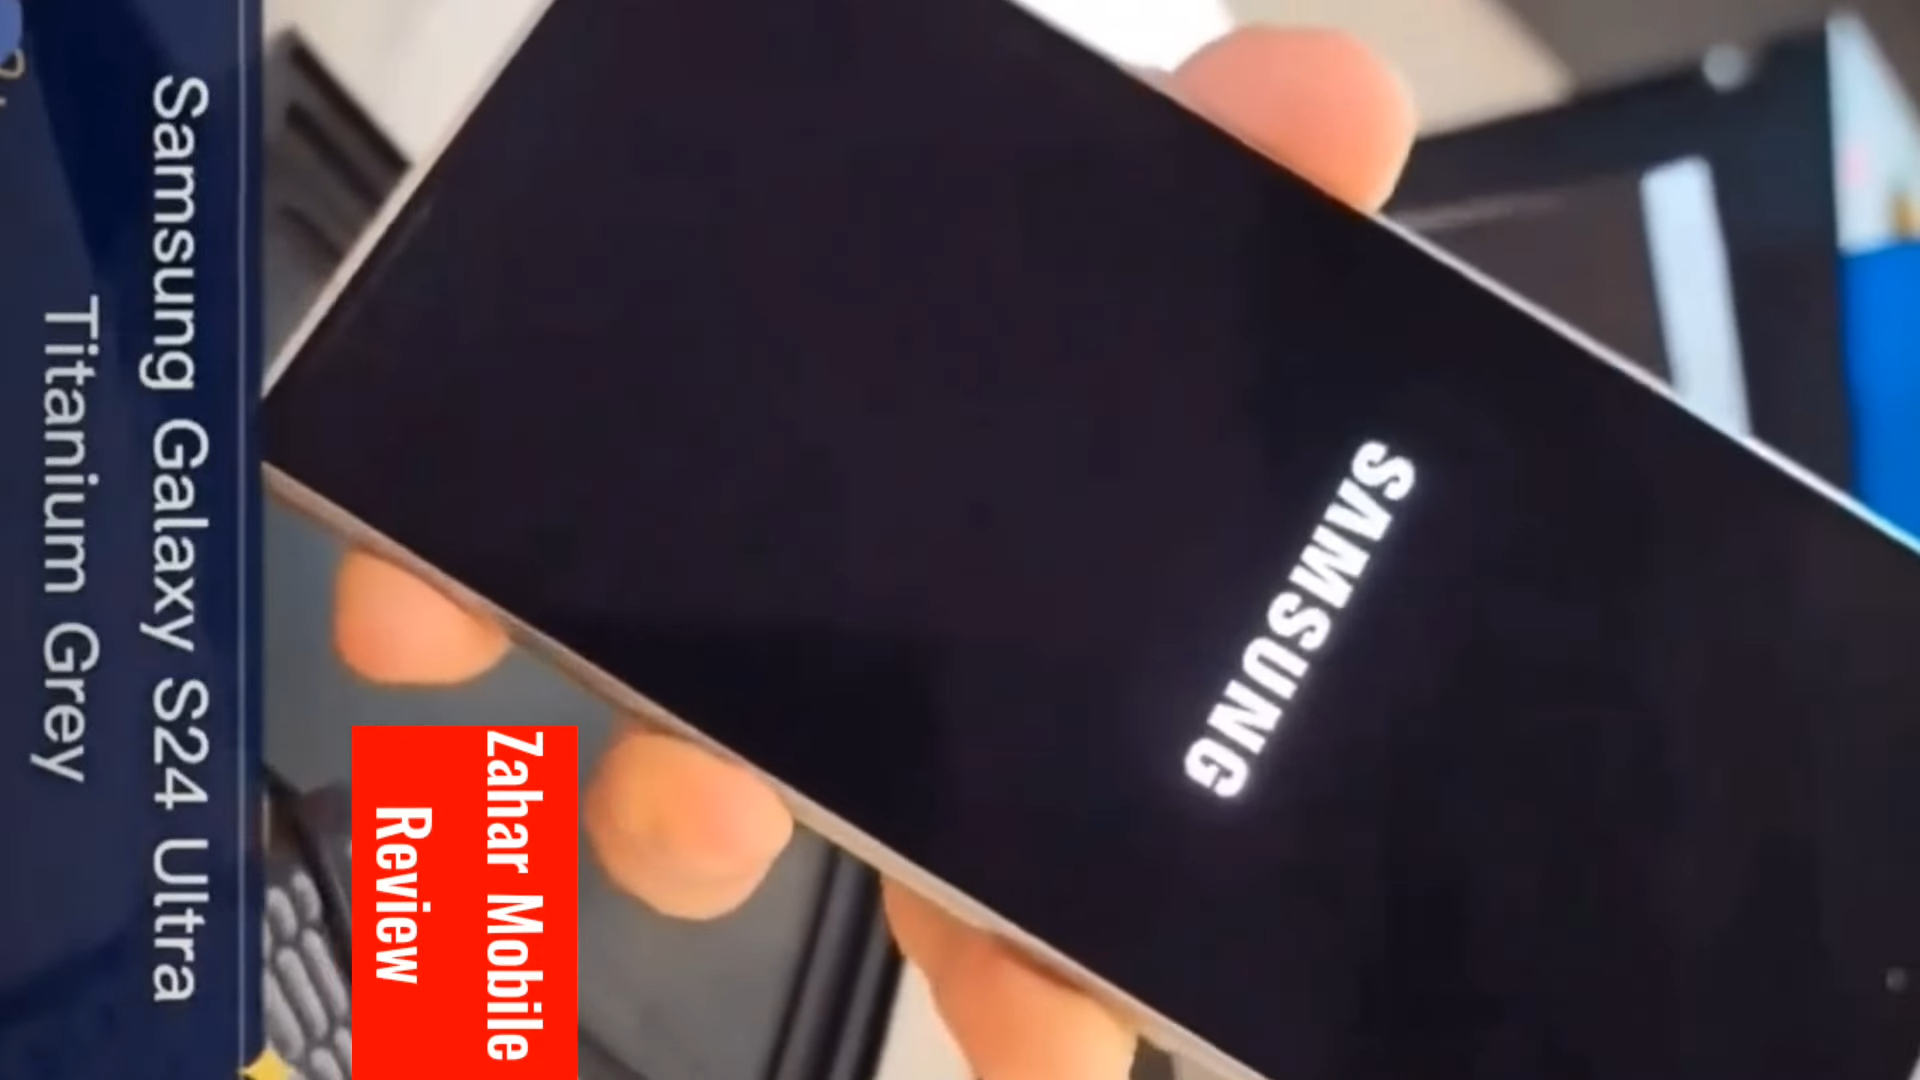 Imagem mostra vídeo do suposto Galaxy S24 Ultra um dia antes de seu lançamento